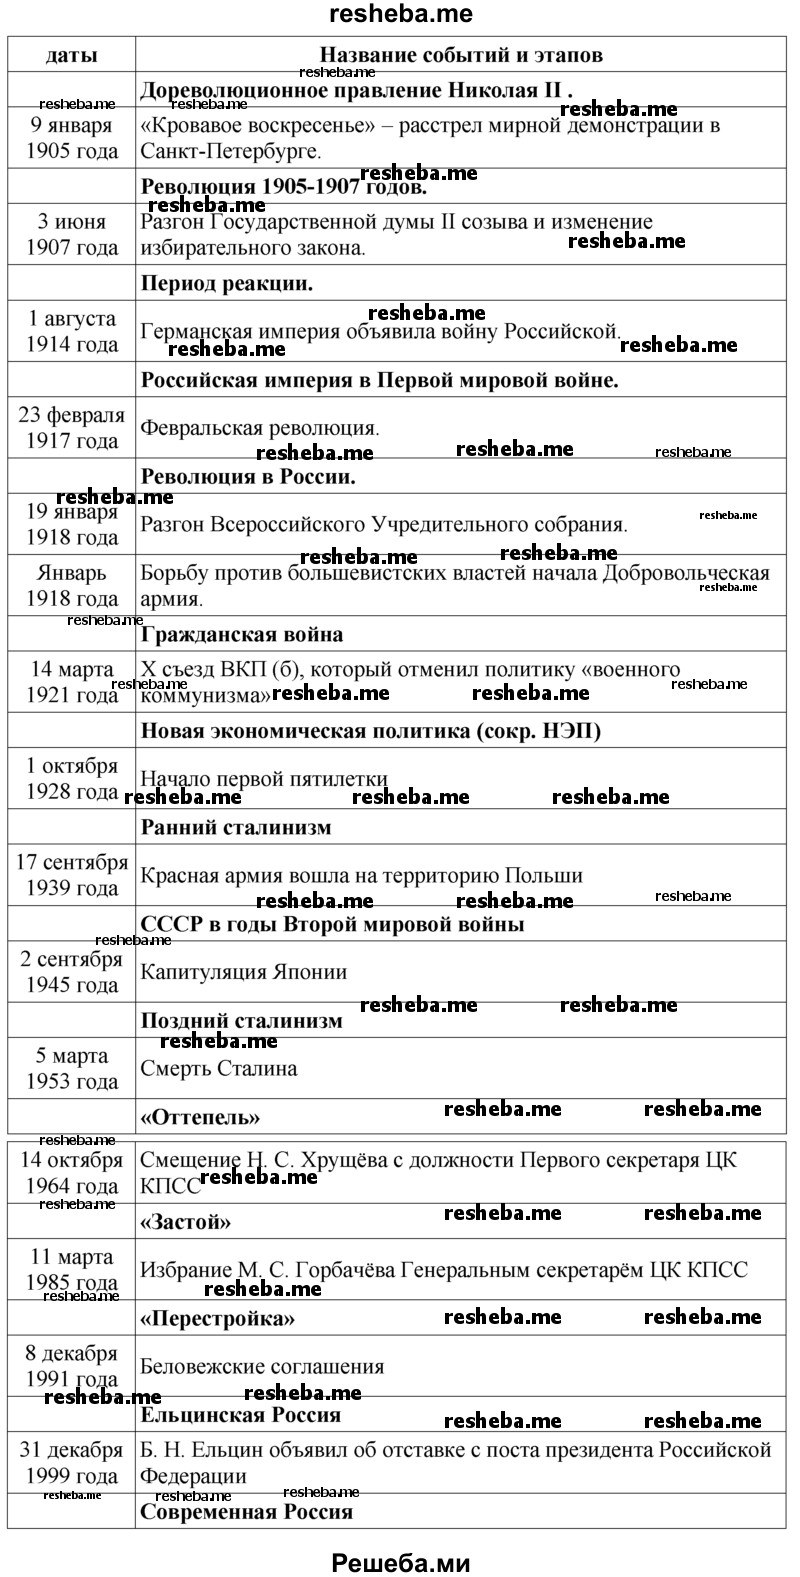 С помощью ленты времени на с. 374-375 раздели историю России XX века на этапы, дай название каждому из них и рубежам, разделяющим этапы